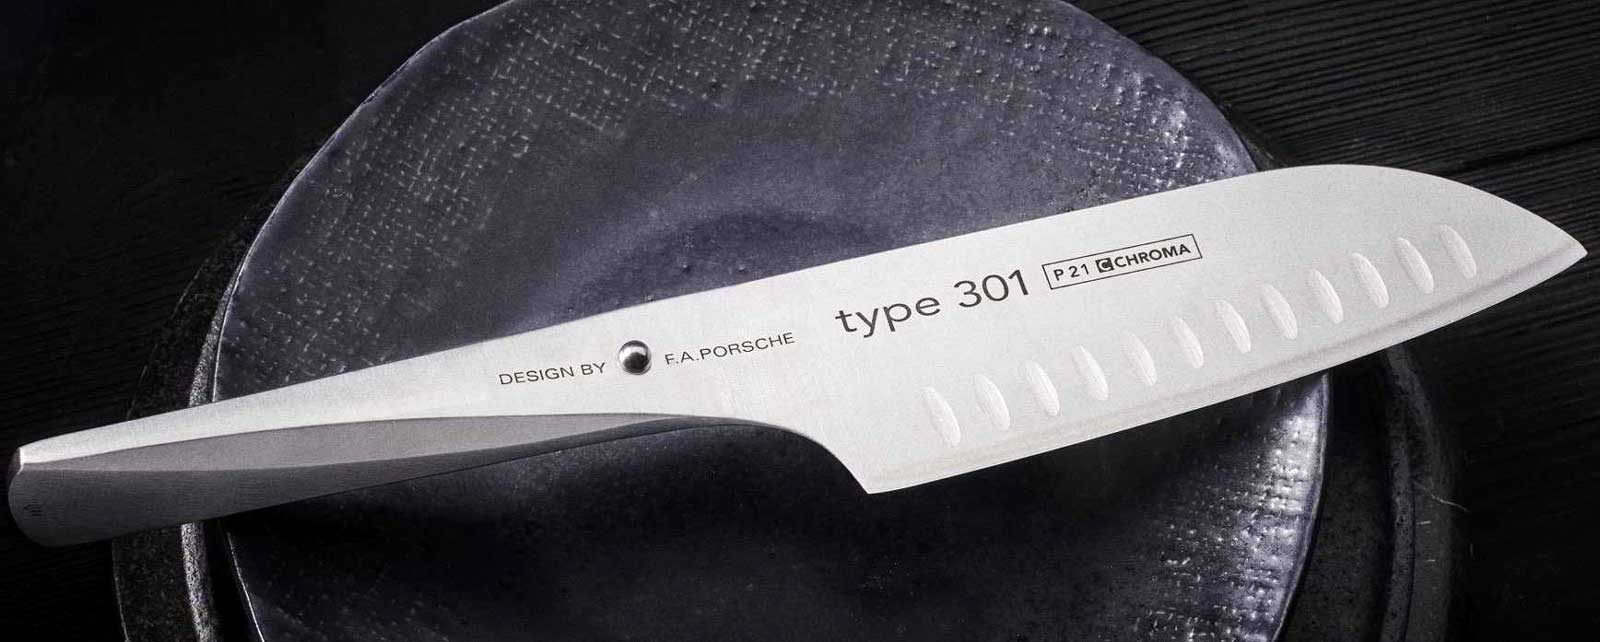 CHROMA tipo 301 - Design by FA Porsche - coltello da chef Questi innovativi coltelli Type 301, progettati dalla societa di design FA Porsche, aprono un nuovo capitolo nello sviluppo dei coltelli da cucina.